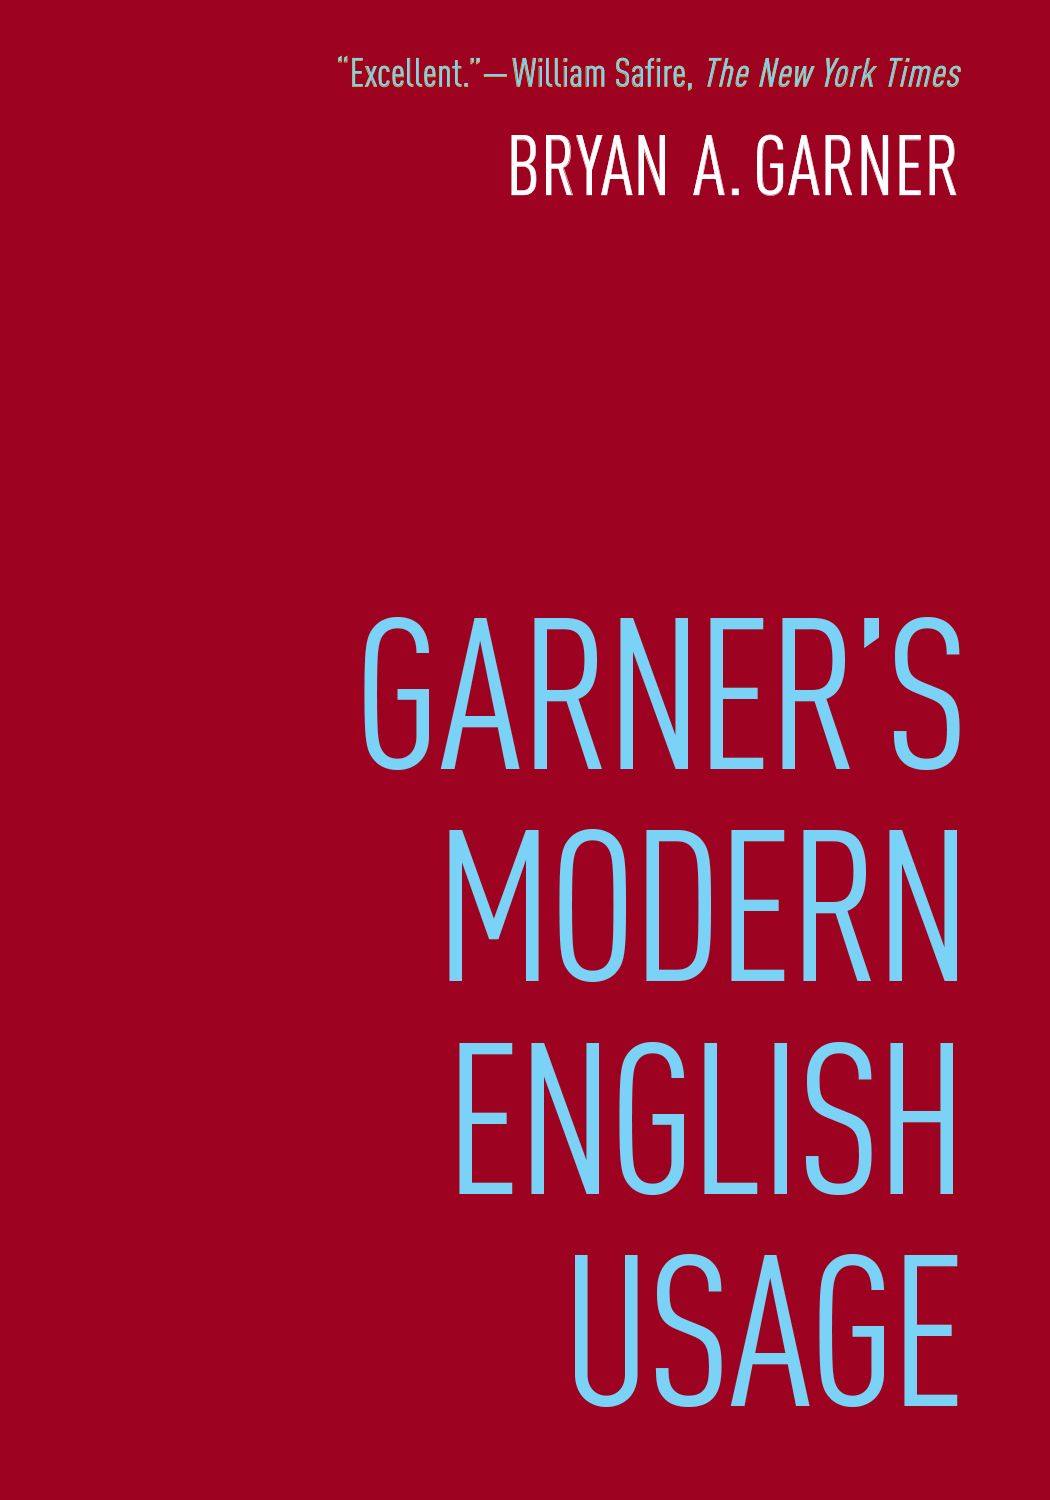 Garner English Usage